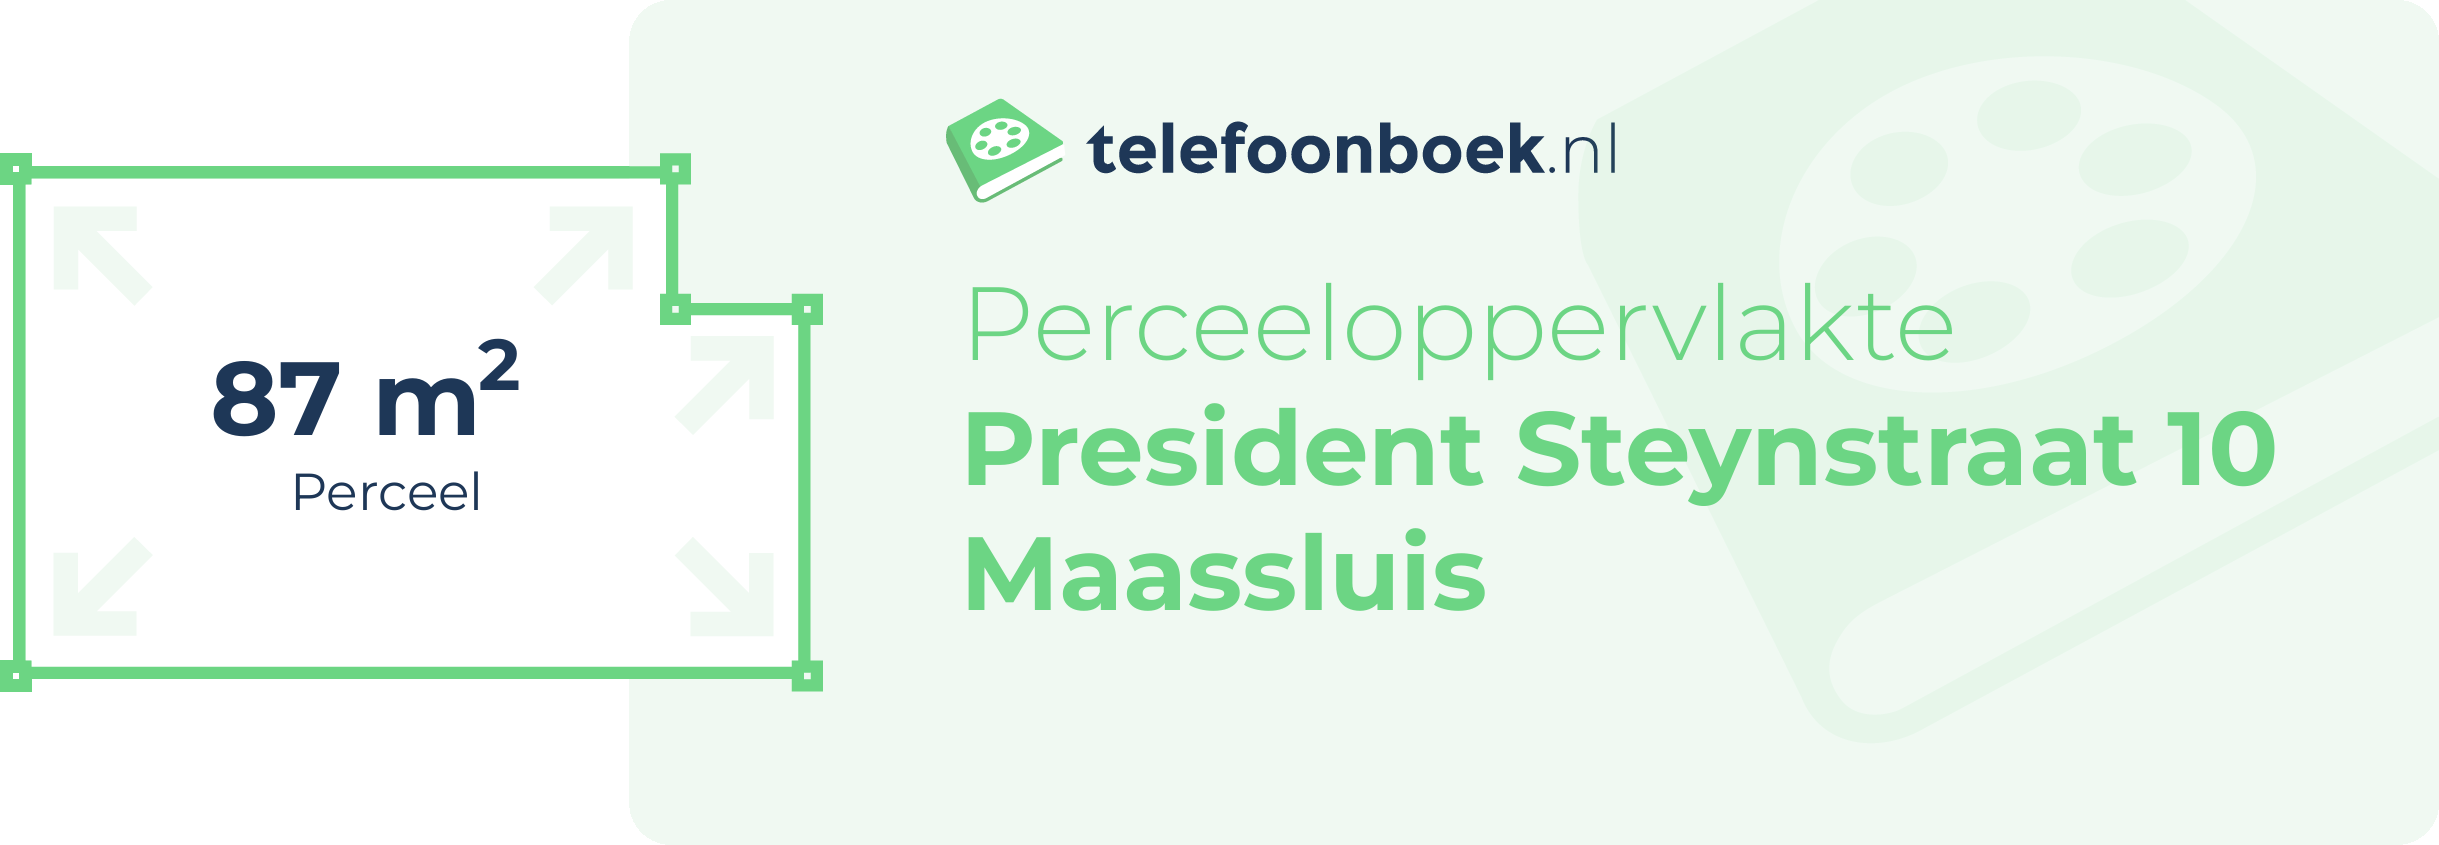 Perceeloppervlakte President Steynstraat 10 Maassluis